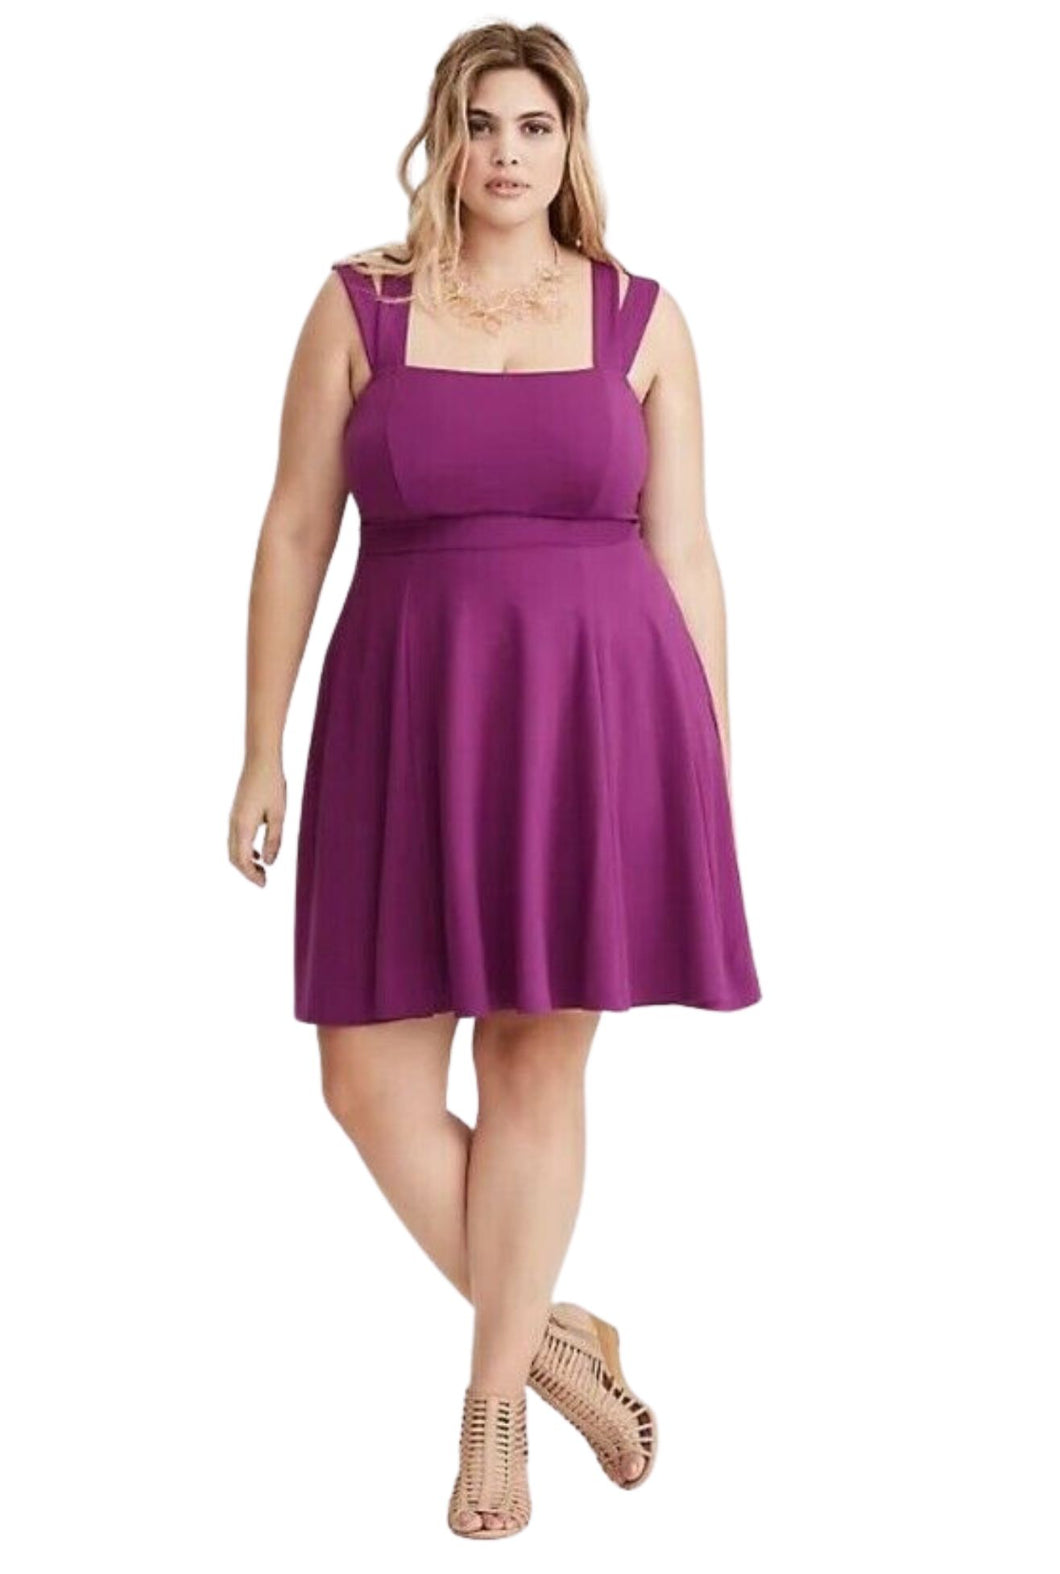 Torrid Purple Double Strap Skater Dress, Size 10 – The Plus Bus Boutique